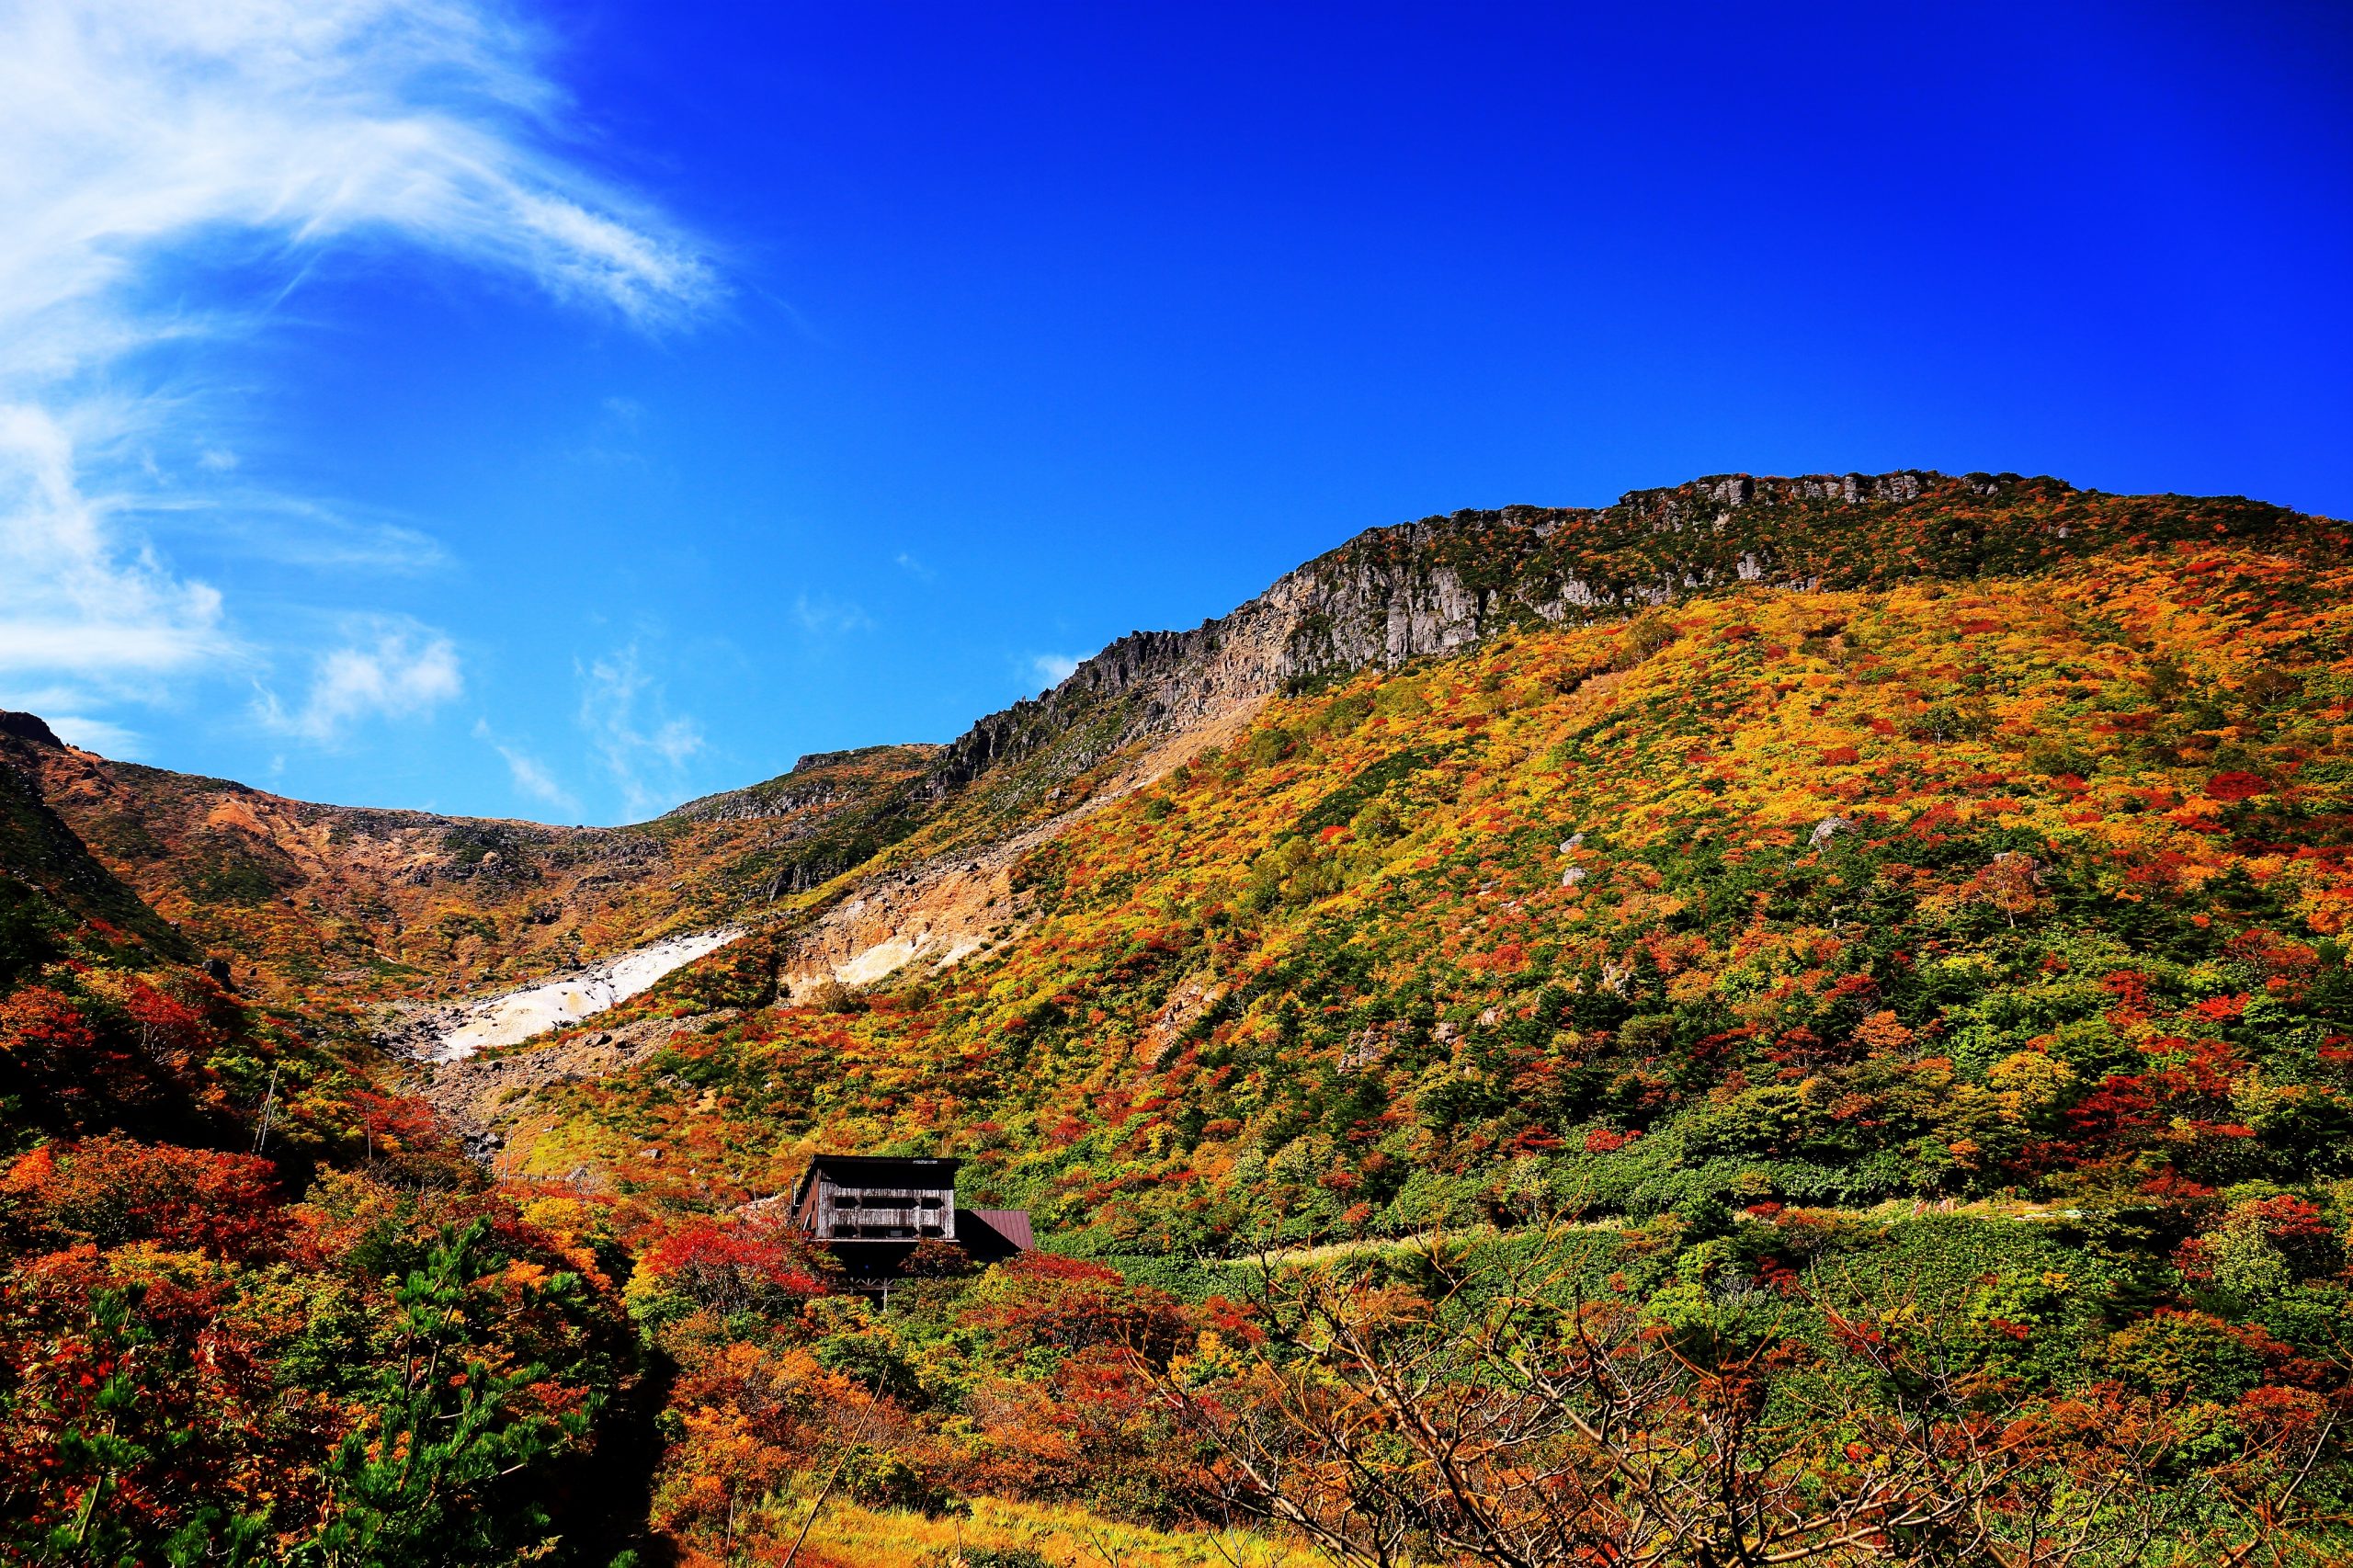 ビギナーも安心♪ ガイドと一緒に安達太良山の魅力を満喫しよう 岳温泉観光協会公式サイト